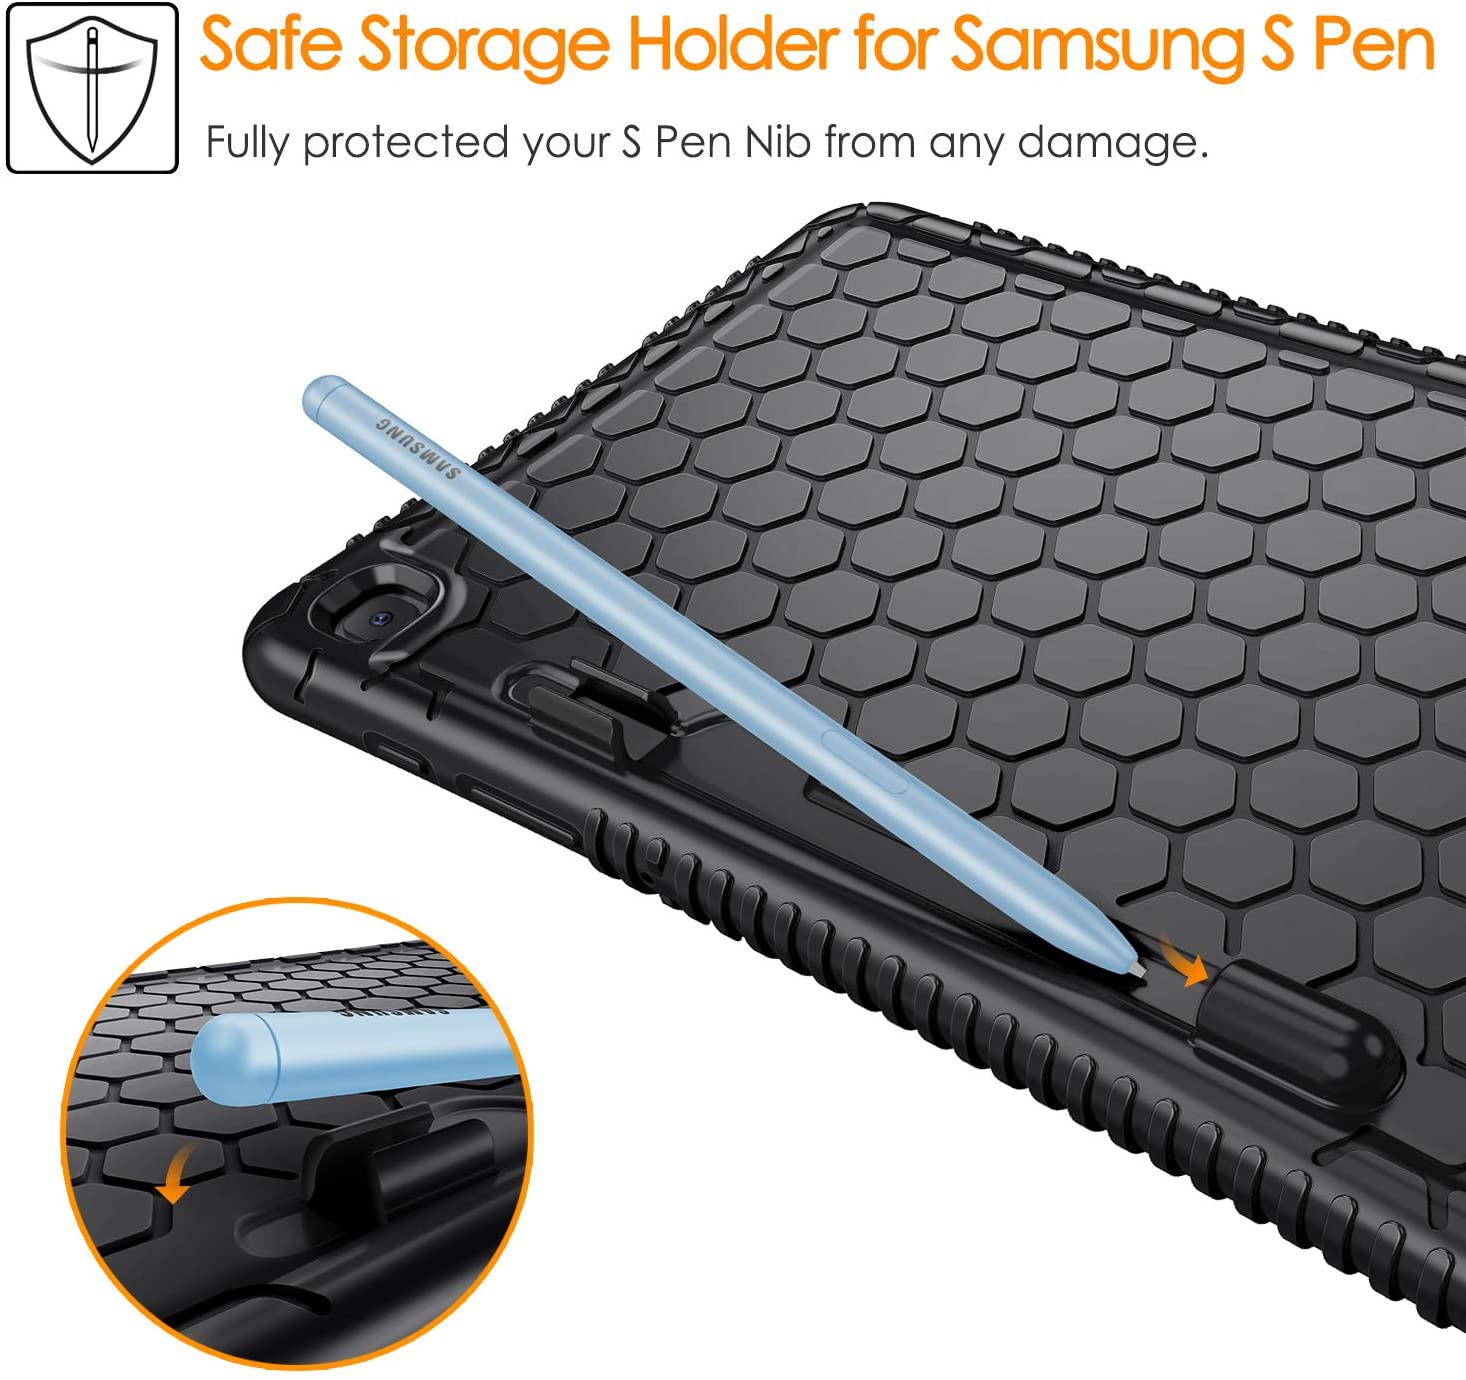 Safe Storage Holder for Samsung S Pen